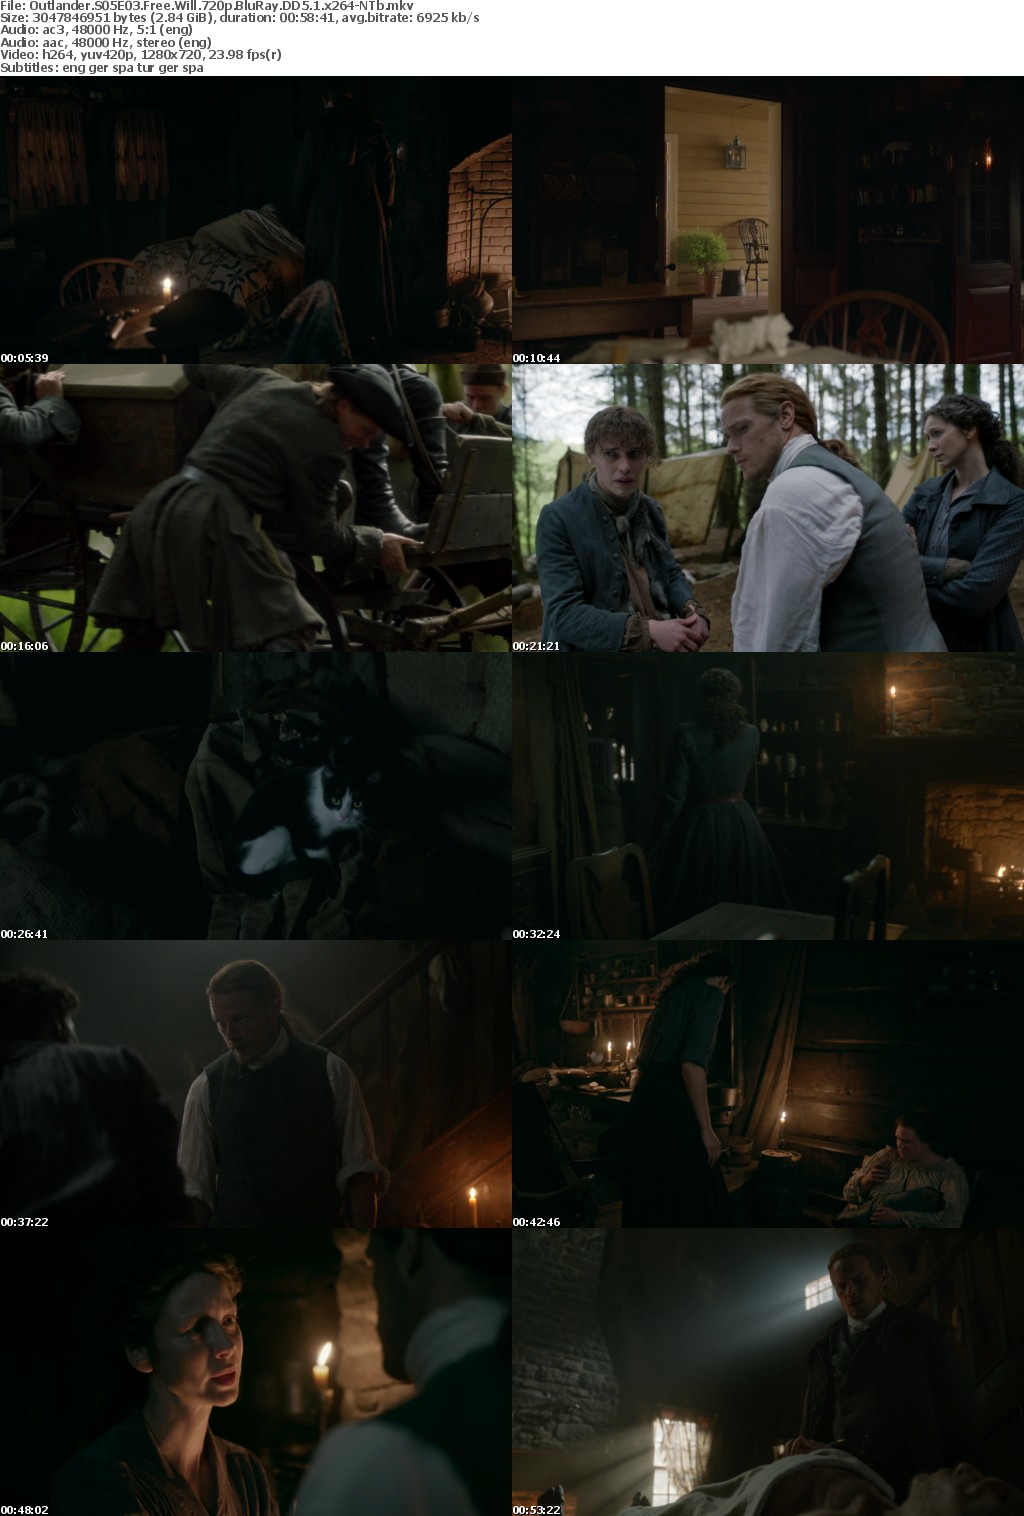 Outlander S05E03 Free Will 720p BluRay DD5 1 x264-NTb